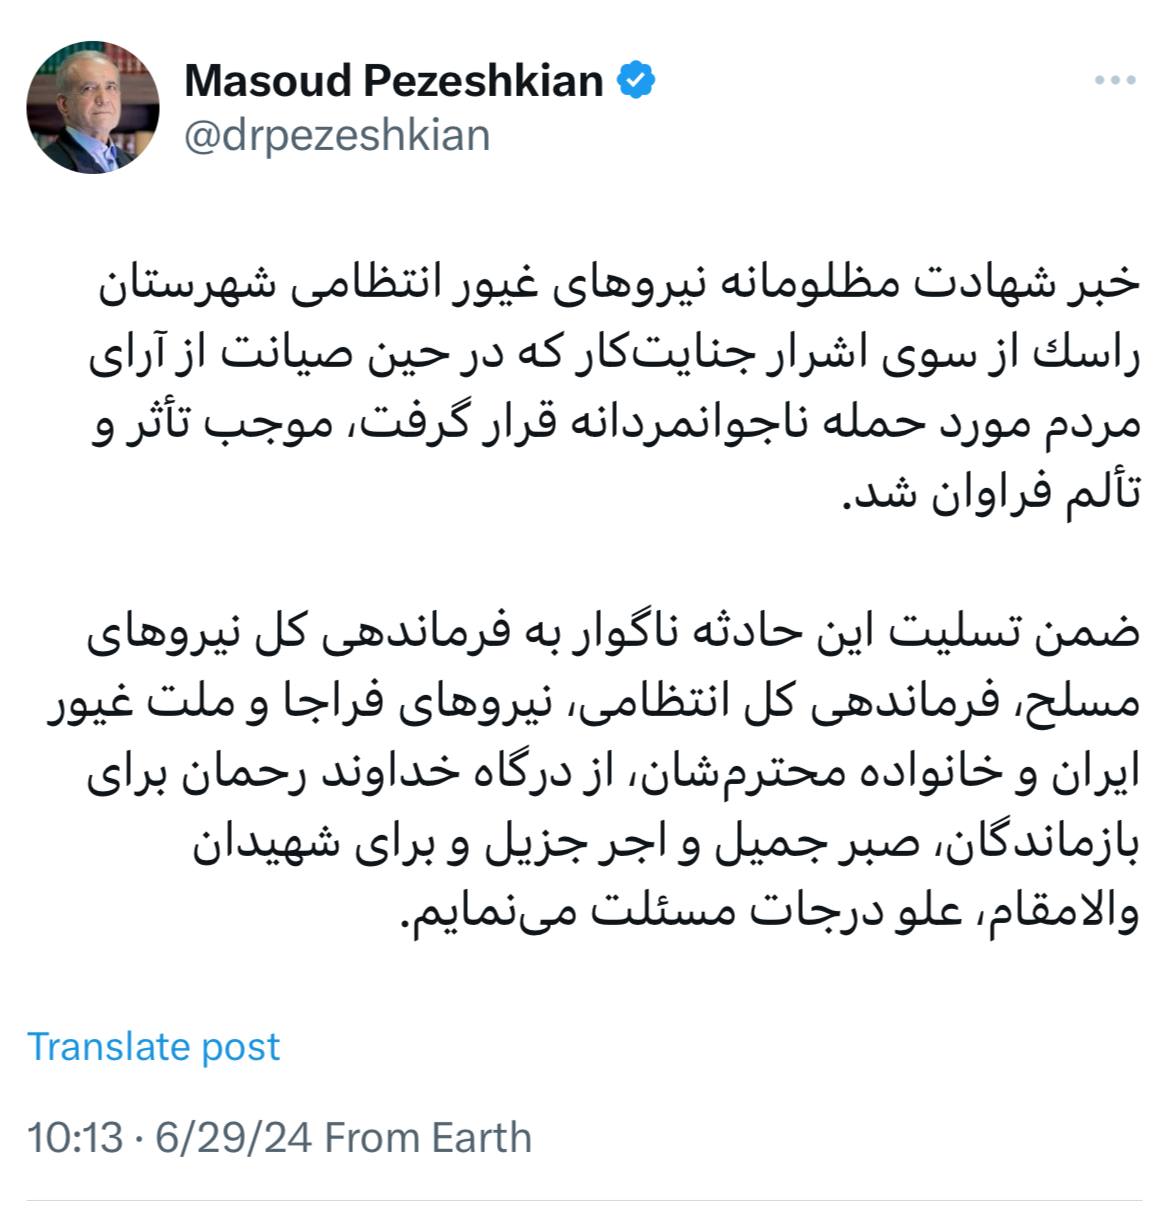 واکنش تلخ مسعود پزشکیان به حمله مسلحانه به صندوق آرا